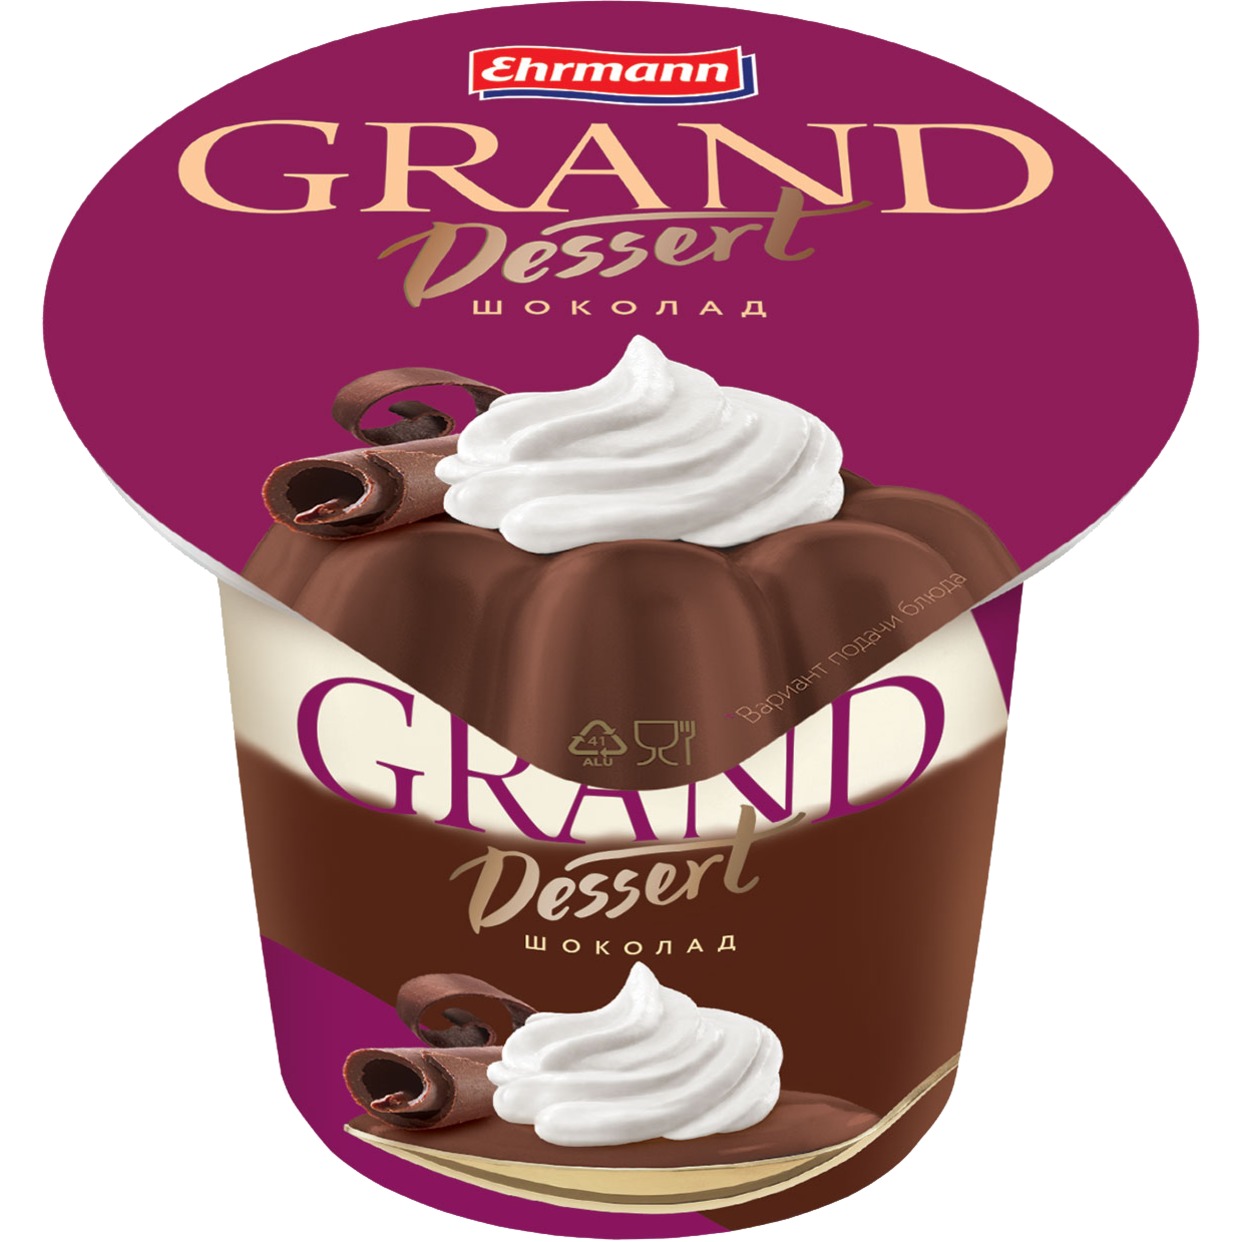 Пудинг молочный Grand Dessert Шоколад 5,2% 200 г по акции в Пятерочке